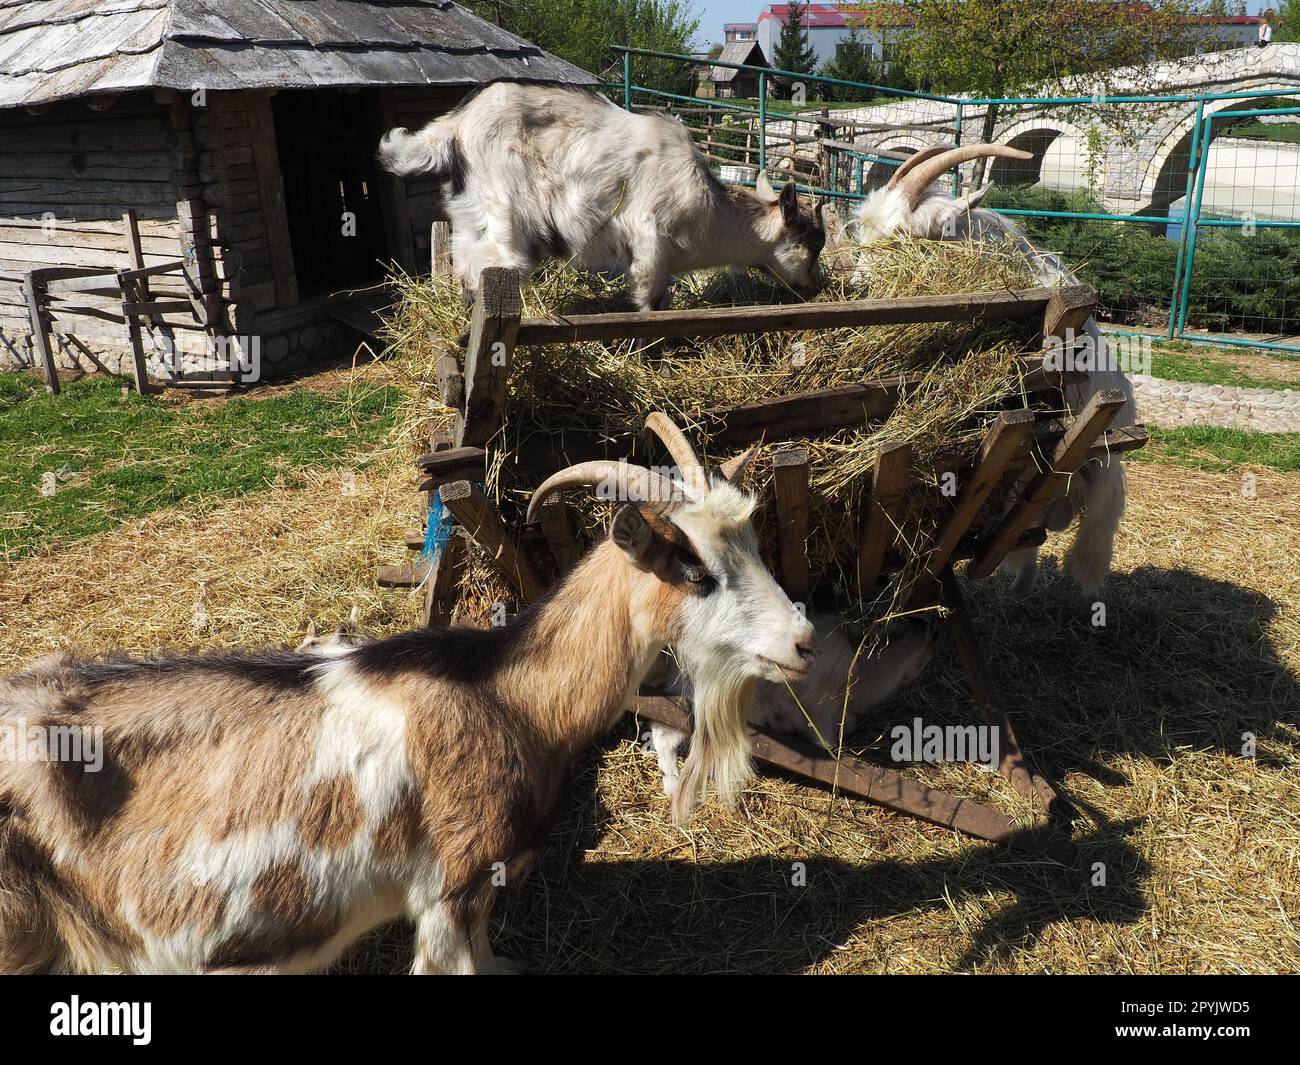 La chèvre domestique est Capra hircus, une espèce d'artiodactyles du genre Capra chèvres de montagne de la famille bovine. La chèvre se tient debout sur ses sabots arrière et mange du foin au-dessus d'une clôture en bois. Agriculture. Banque D'Images